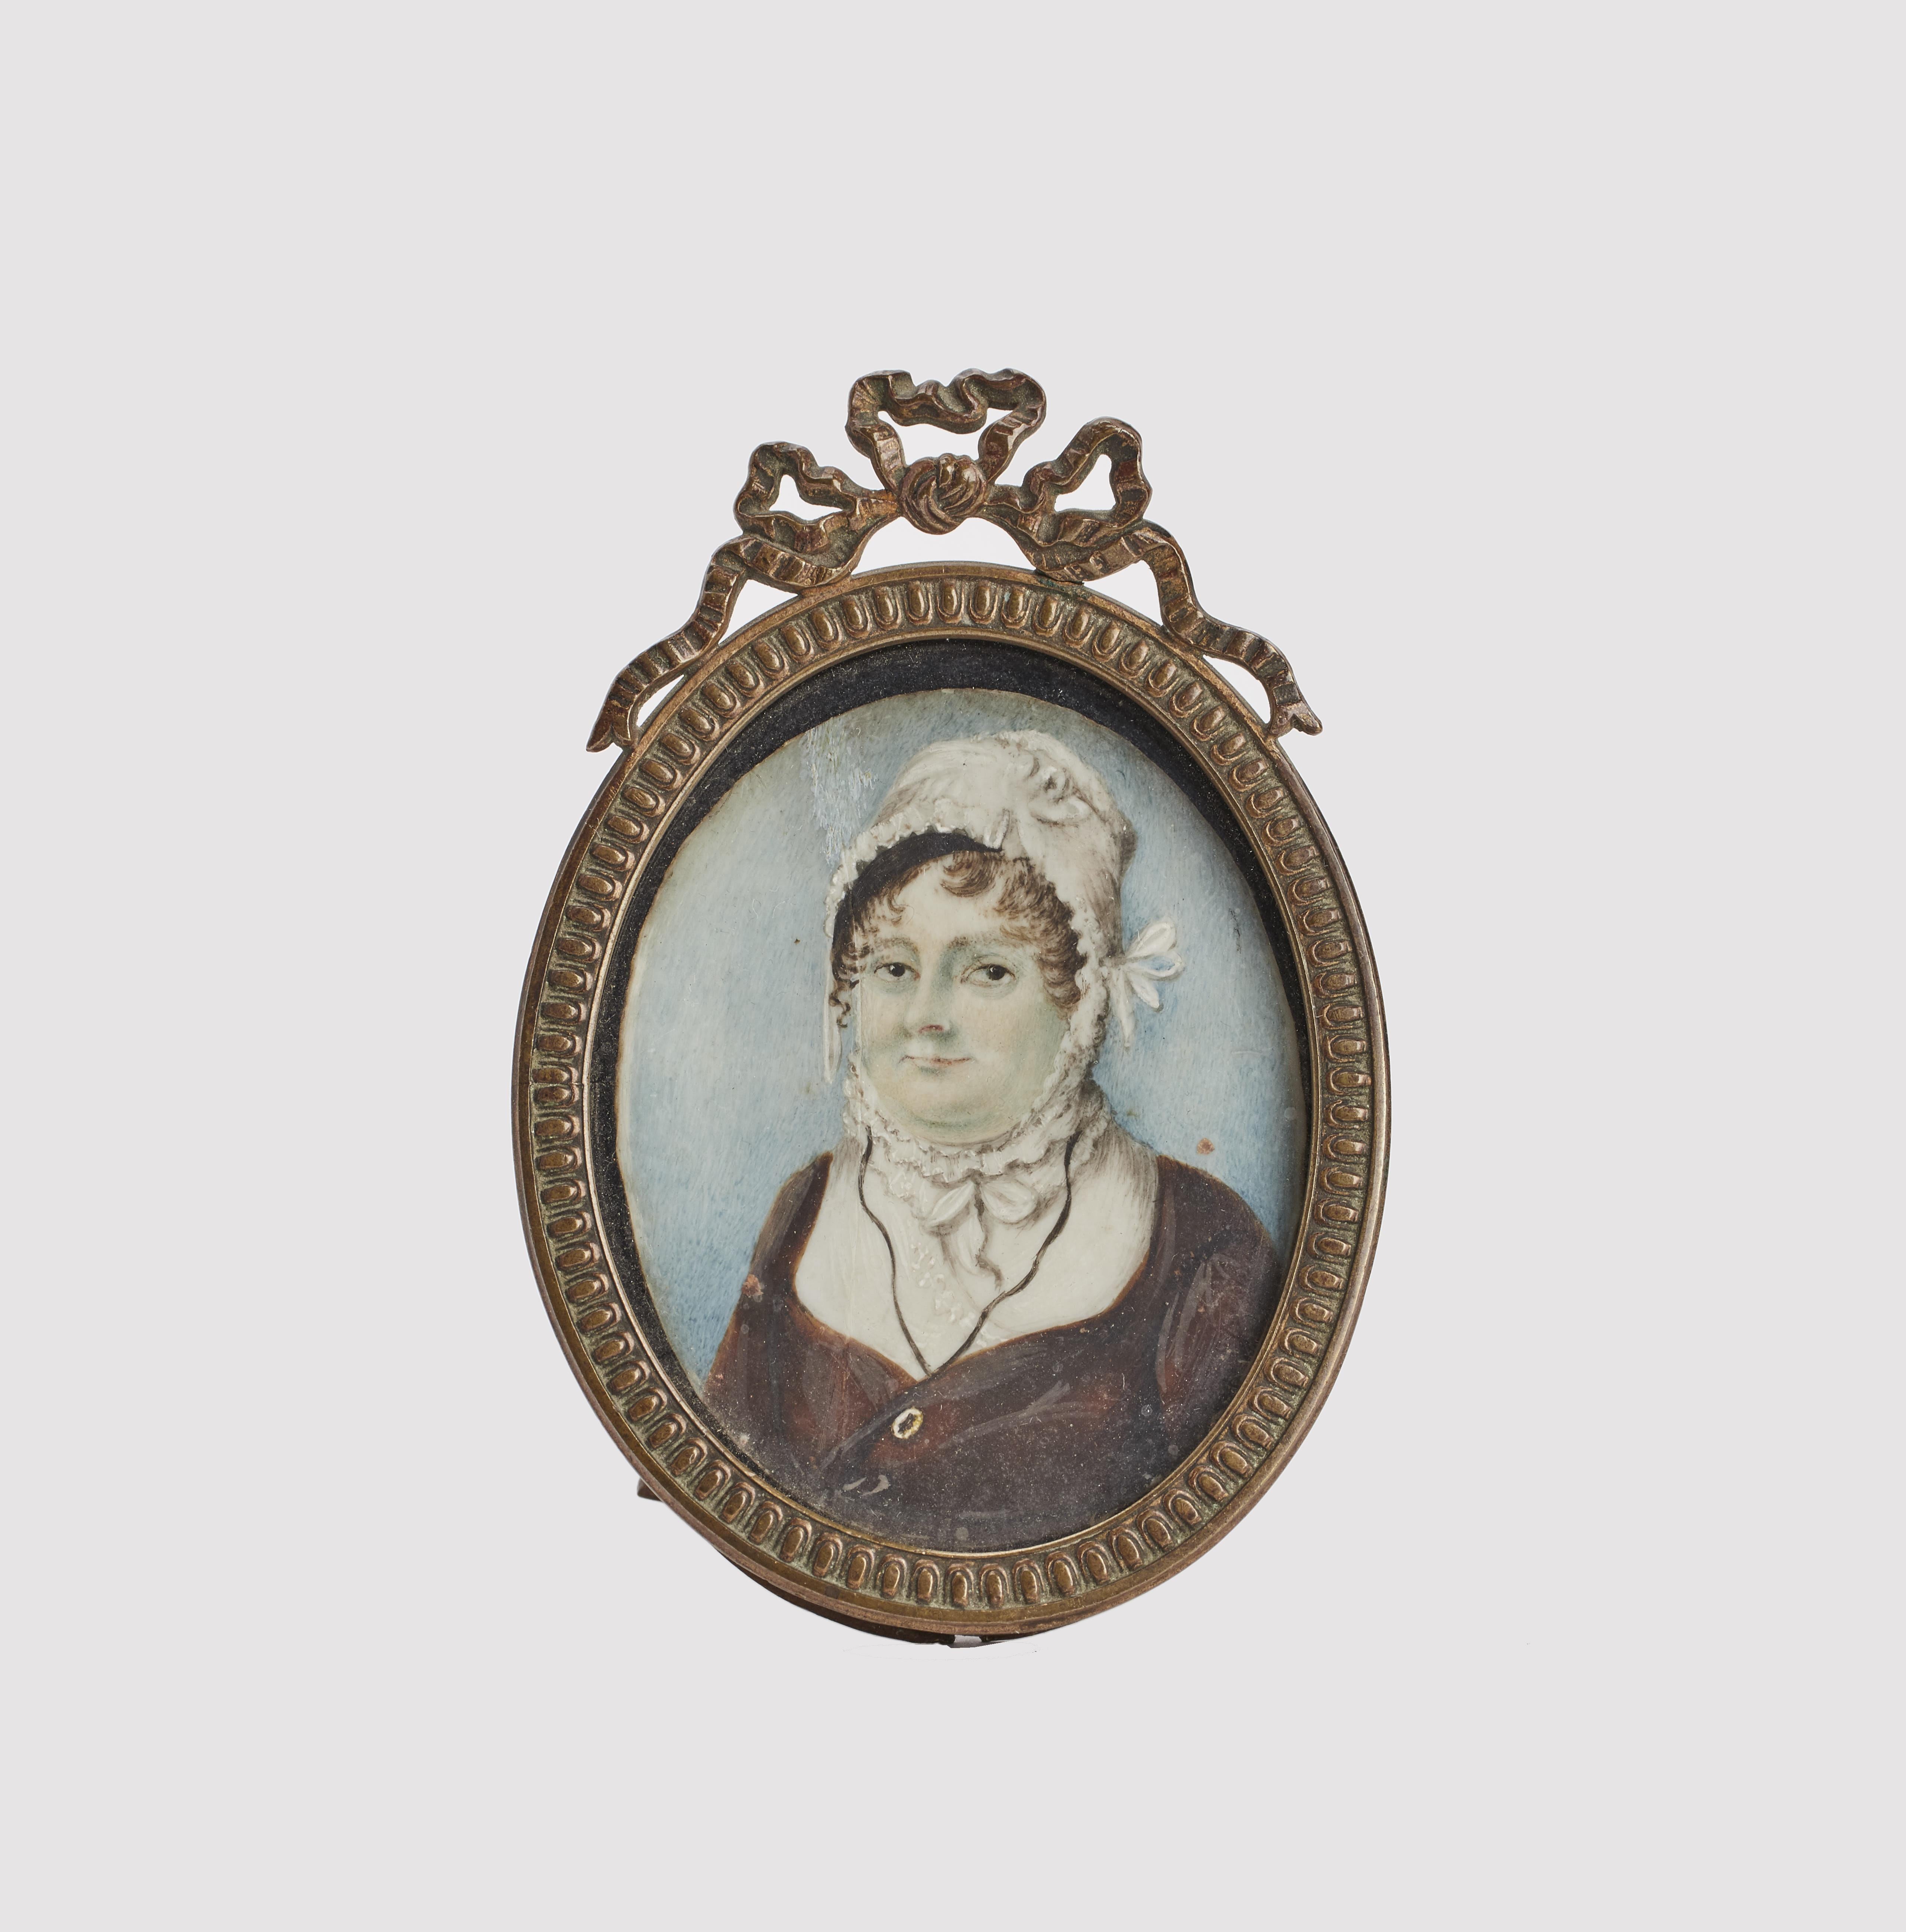 Ovale Miniatur mit vergoldetem Messingrahmen, Aquarellmalerei auf Elfenbein,  mit der Büste einer Frau, die eine CAP trägt. England Ende des XVIII. Jahrhunderts. 
(VERSAND NUR IN DIE EU)
